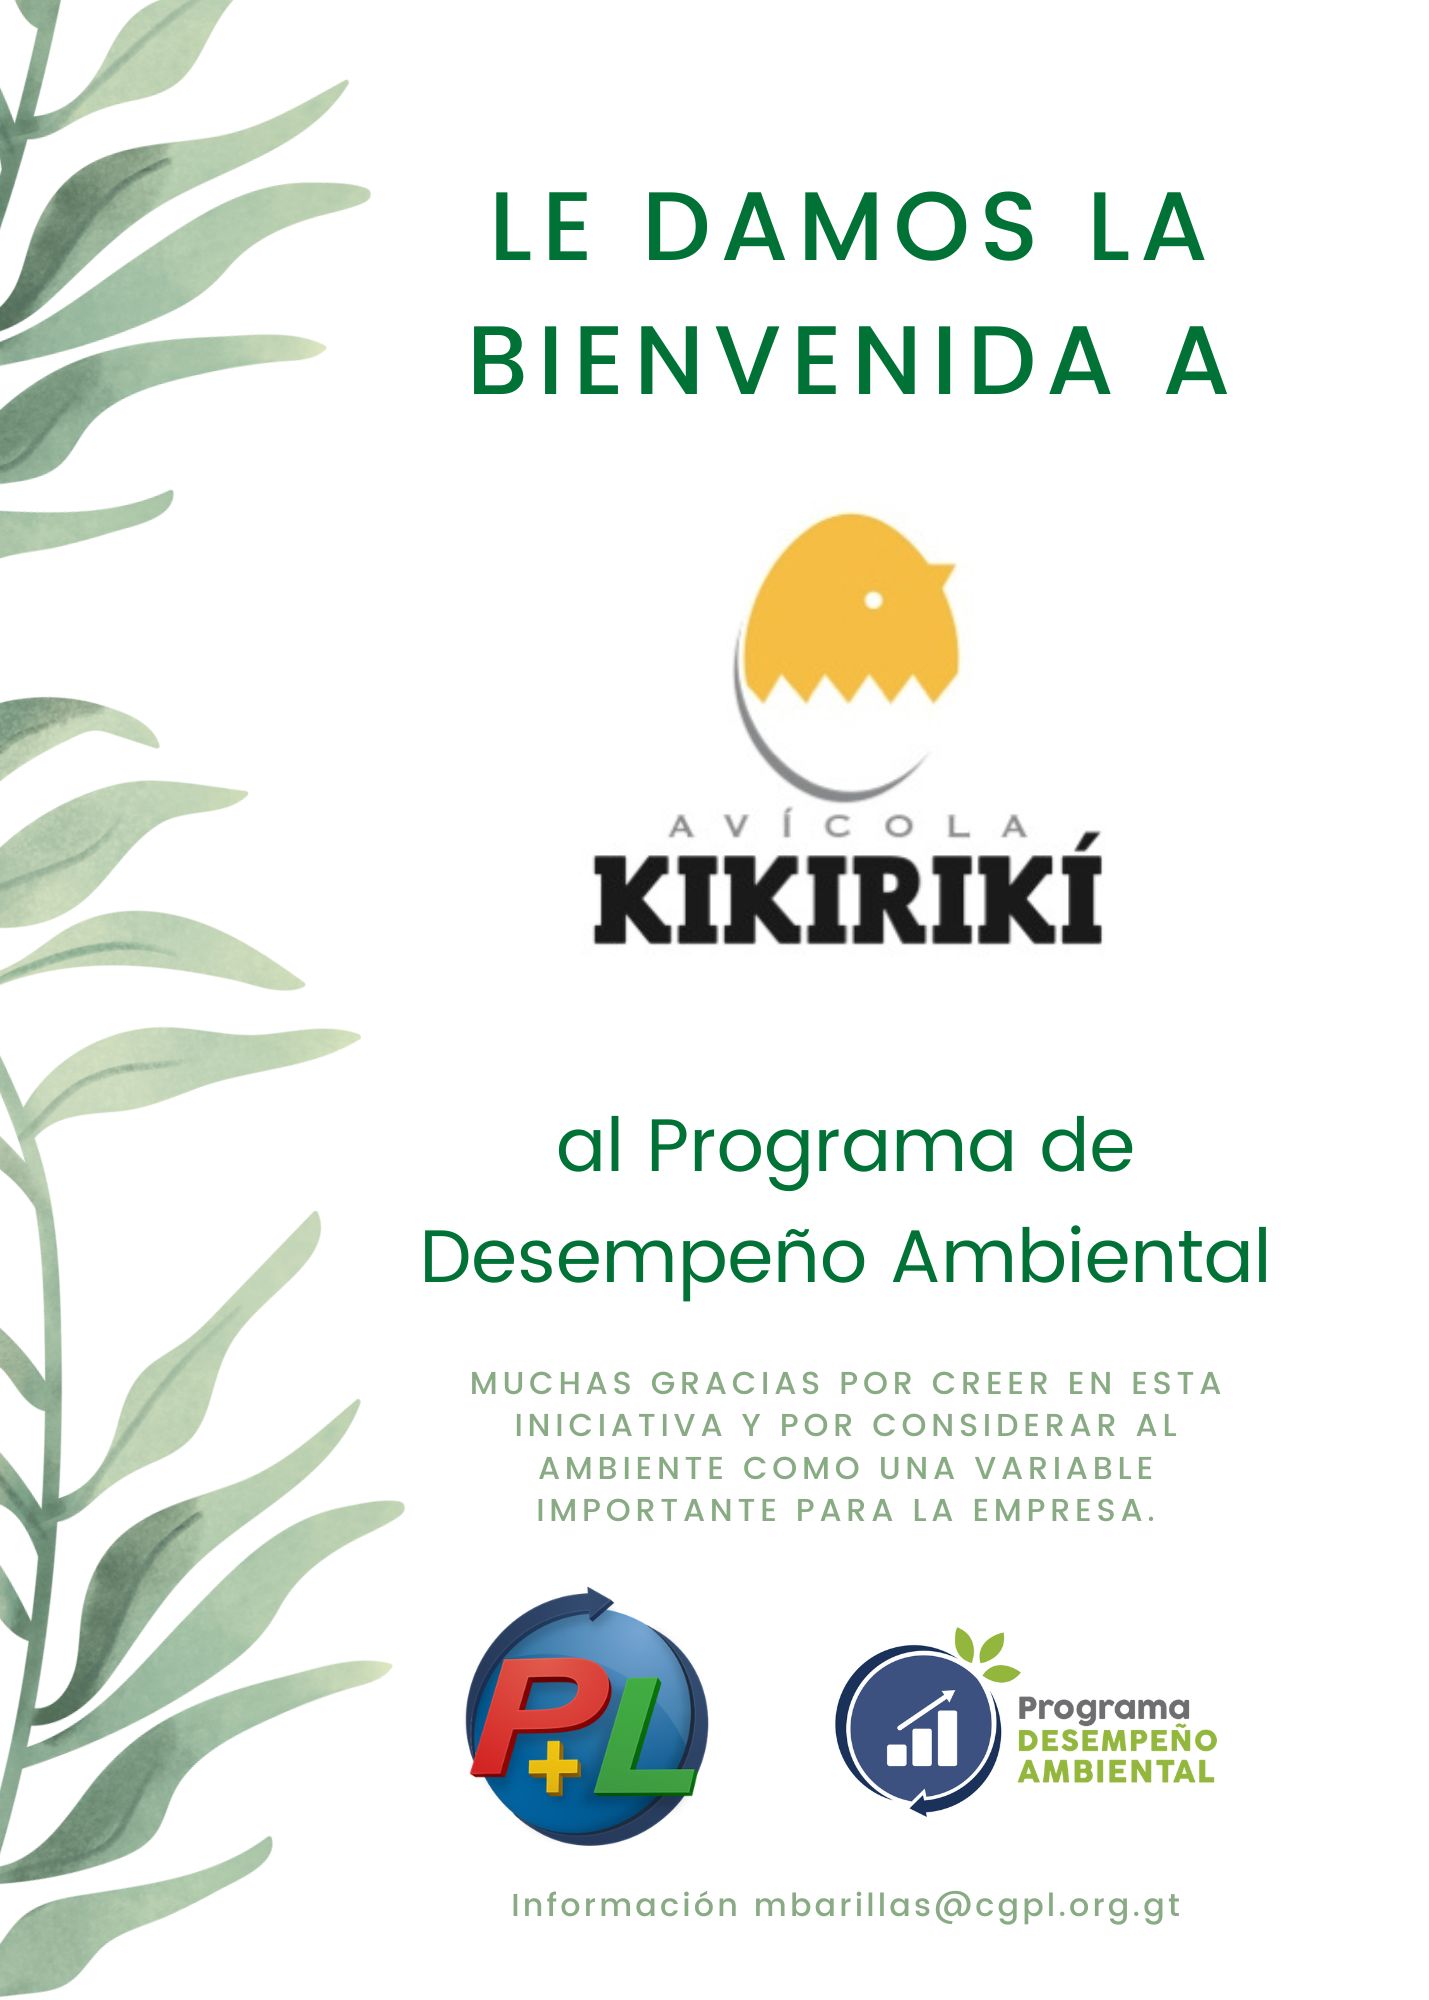 Bienvenida A Nuestro Nuevo Afiliado Del Programa De Desempeño Ambiental!, Avícola Kikiriki